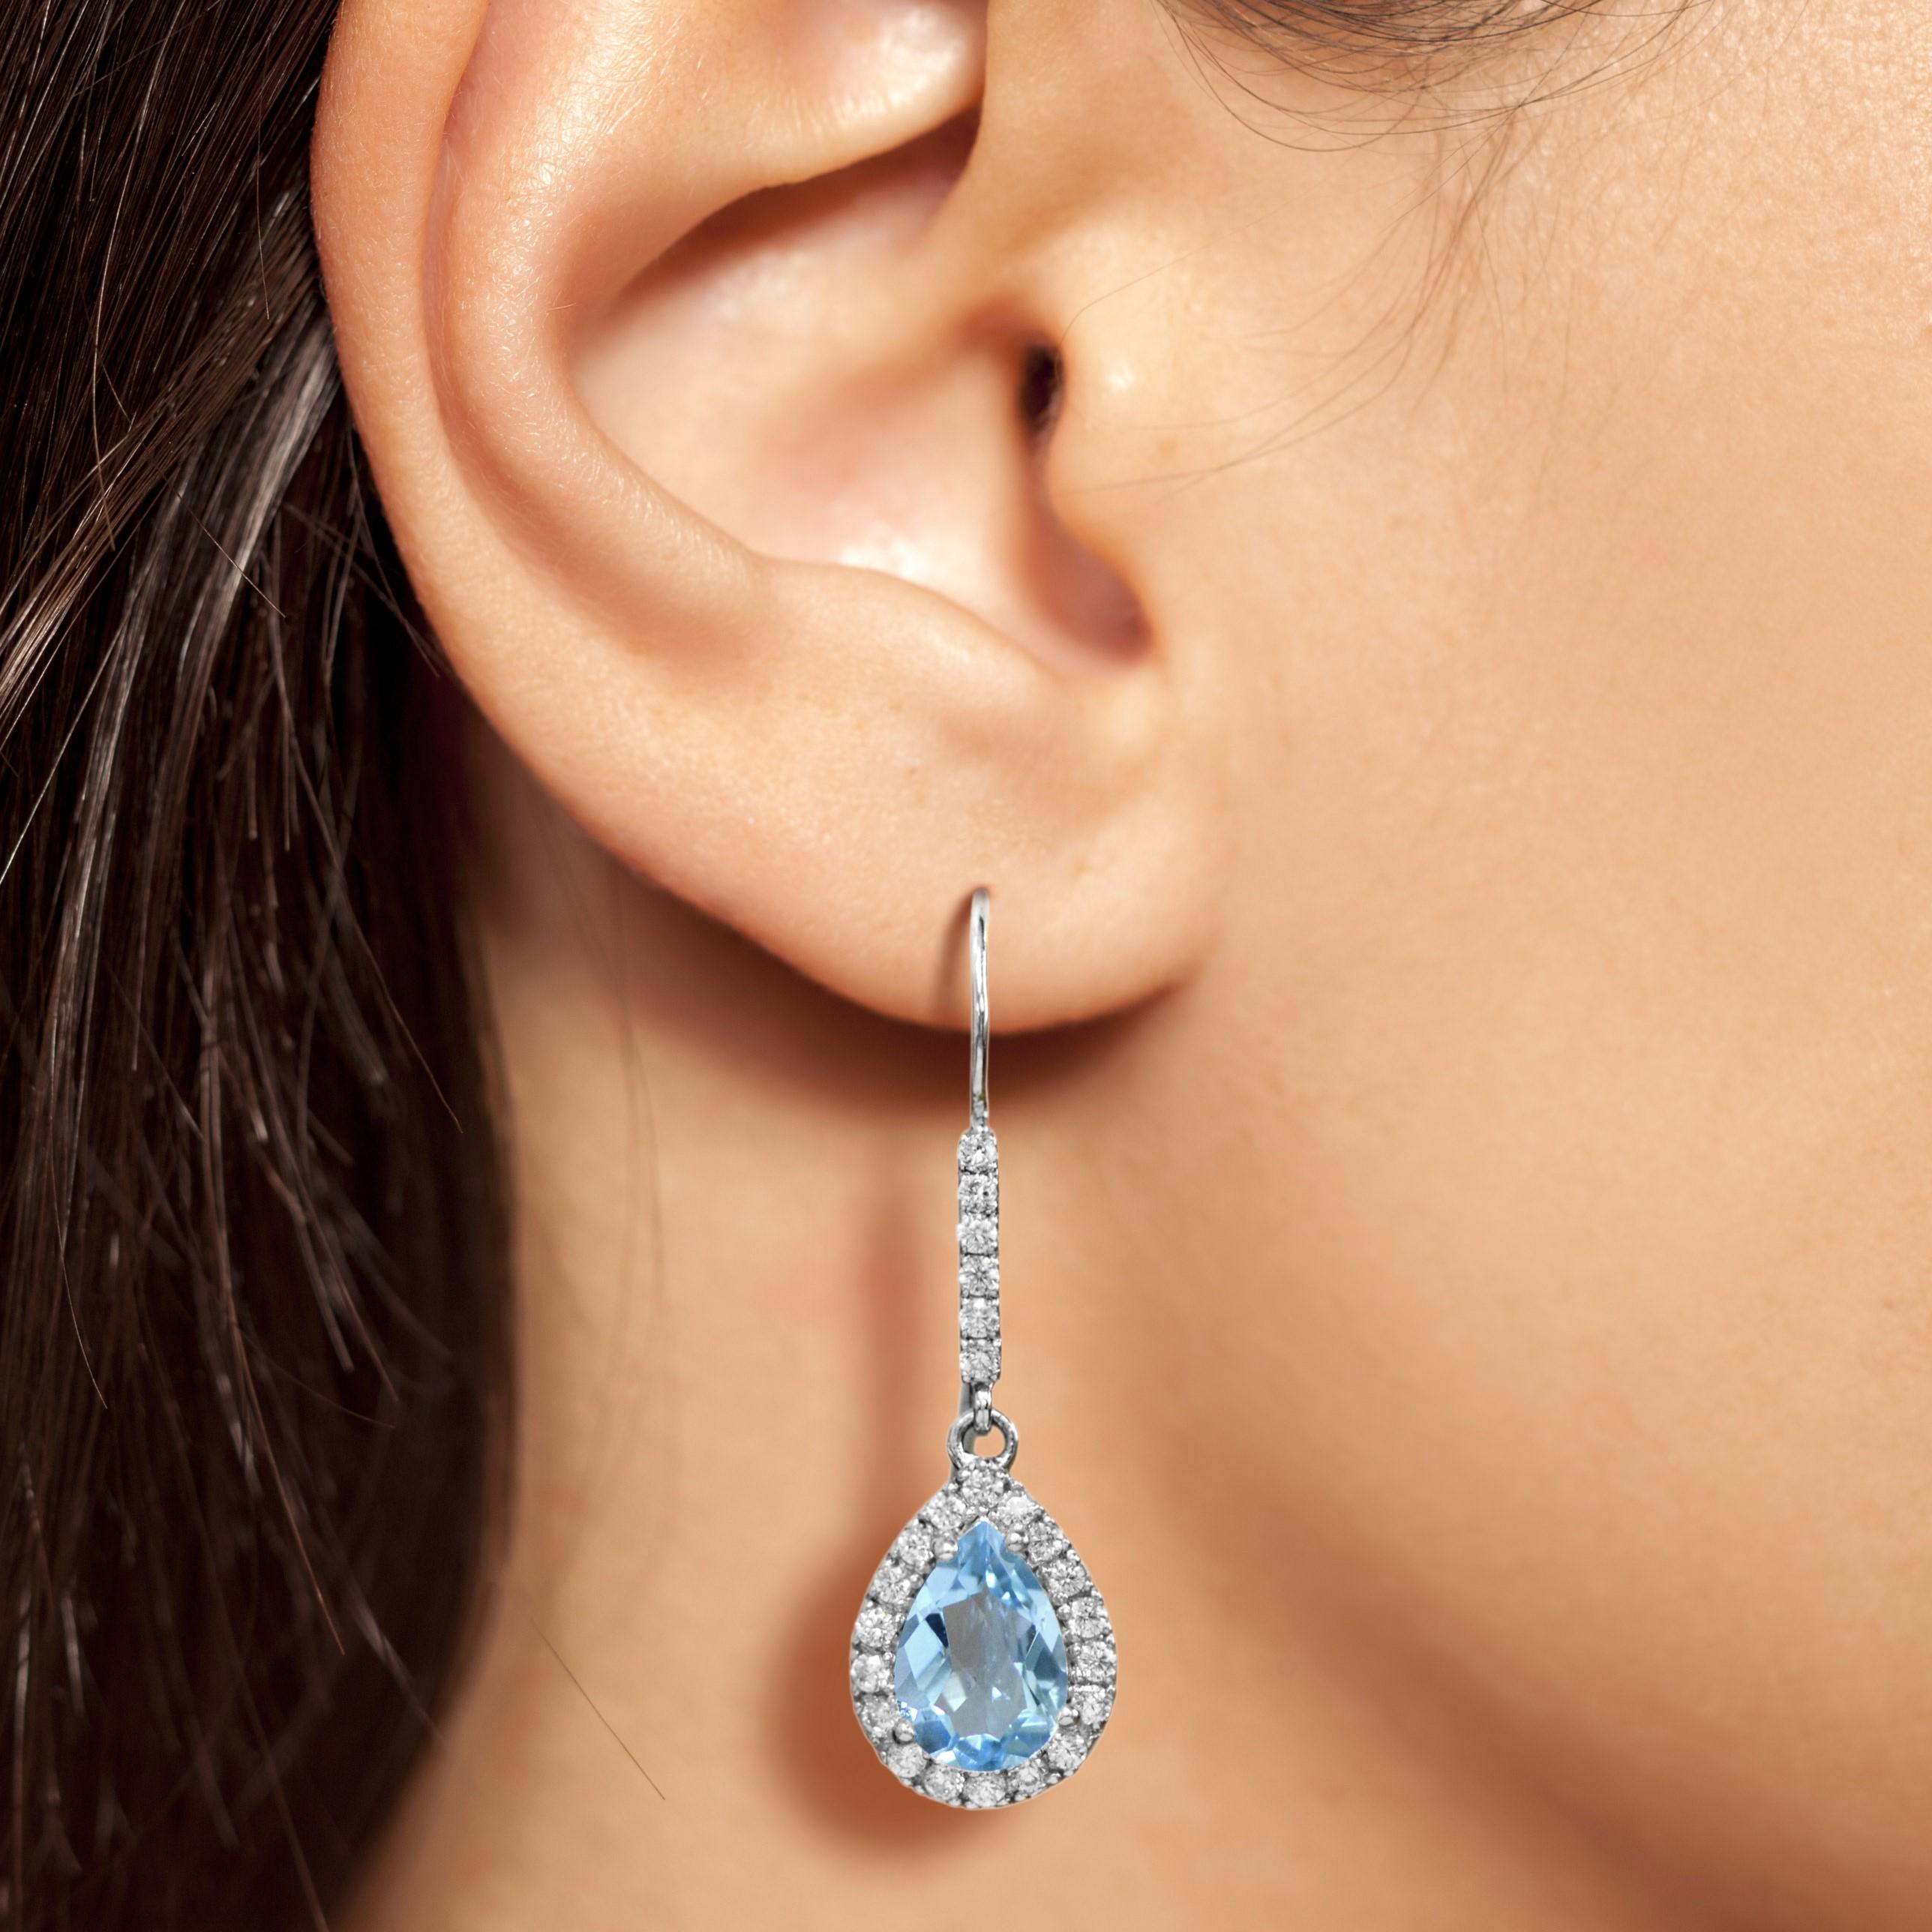 Ces boucles d'oreilles halo en topaze bleue sont d'une beauté luxueuse en or blanc 14K. Un halo de diamants souligne la teinte bleue estivale de la pierre précieuse. Des diamants étincelants ornent la balle d'une brillance supplémentaire. Un cadeau